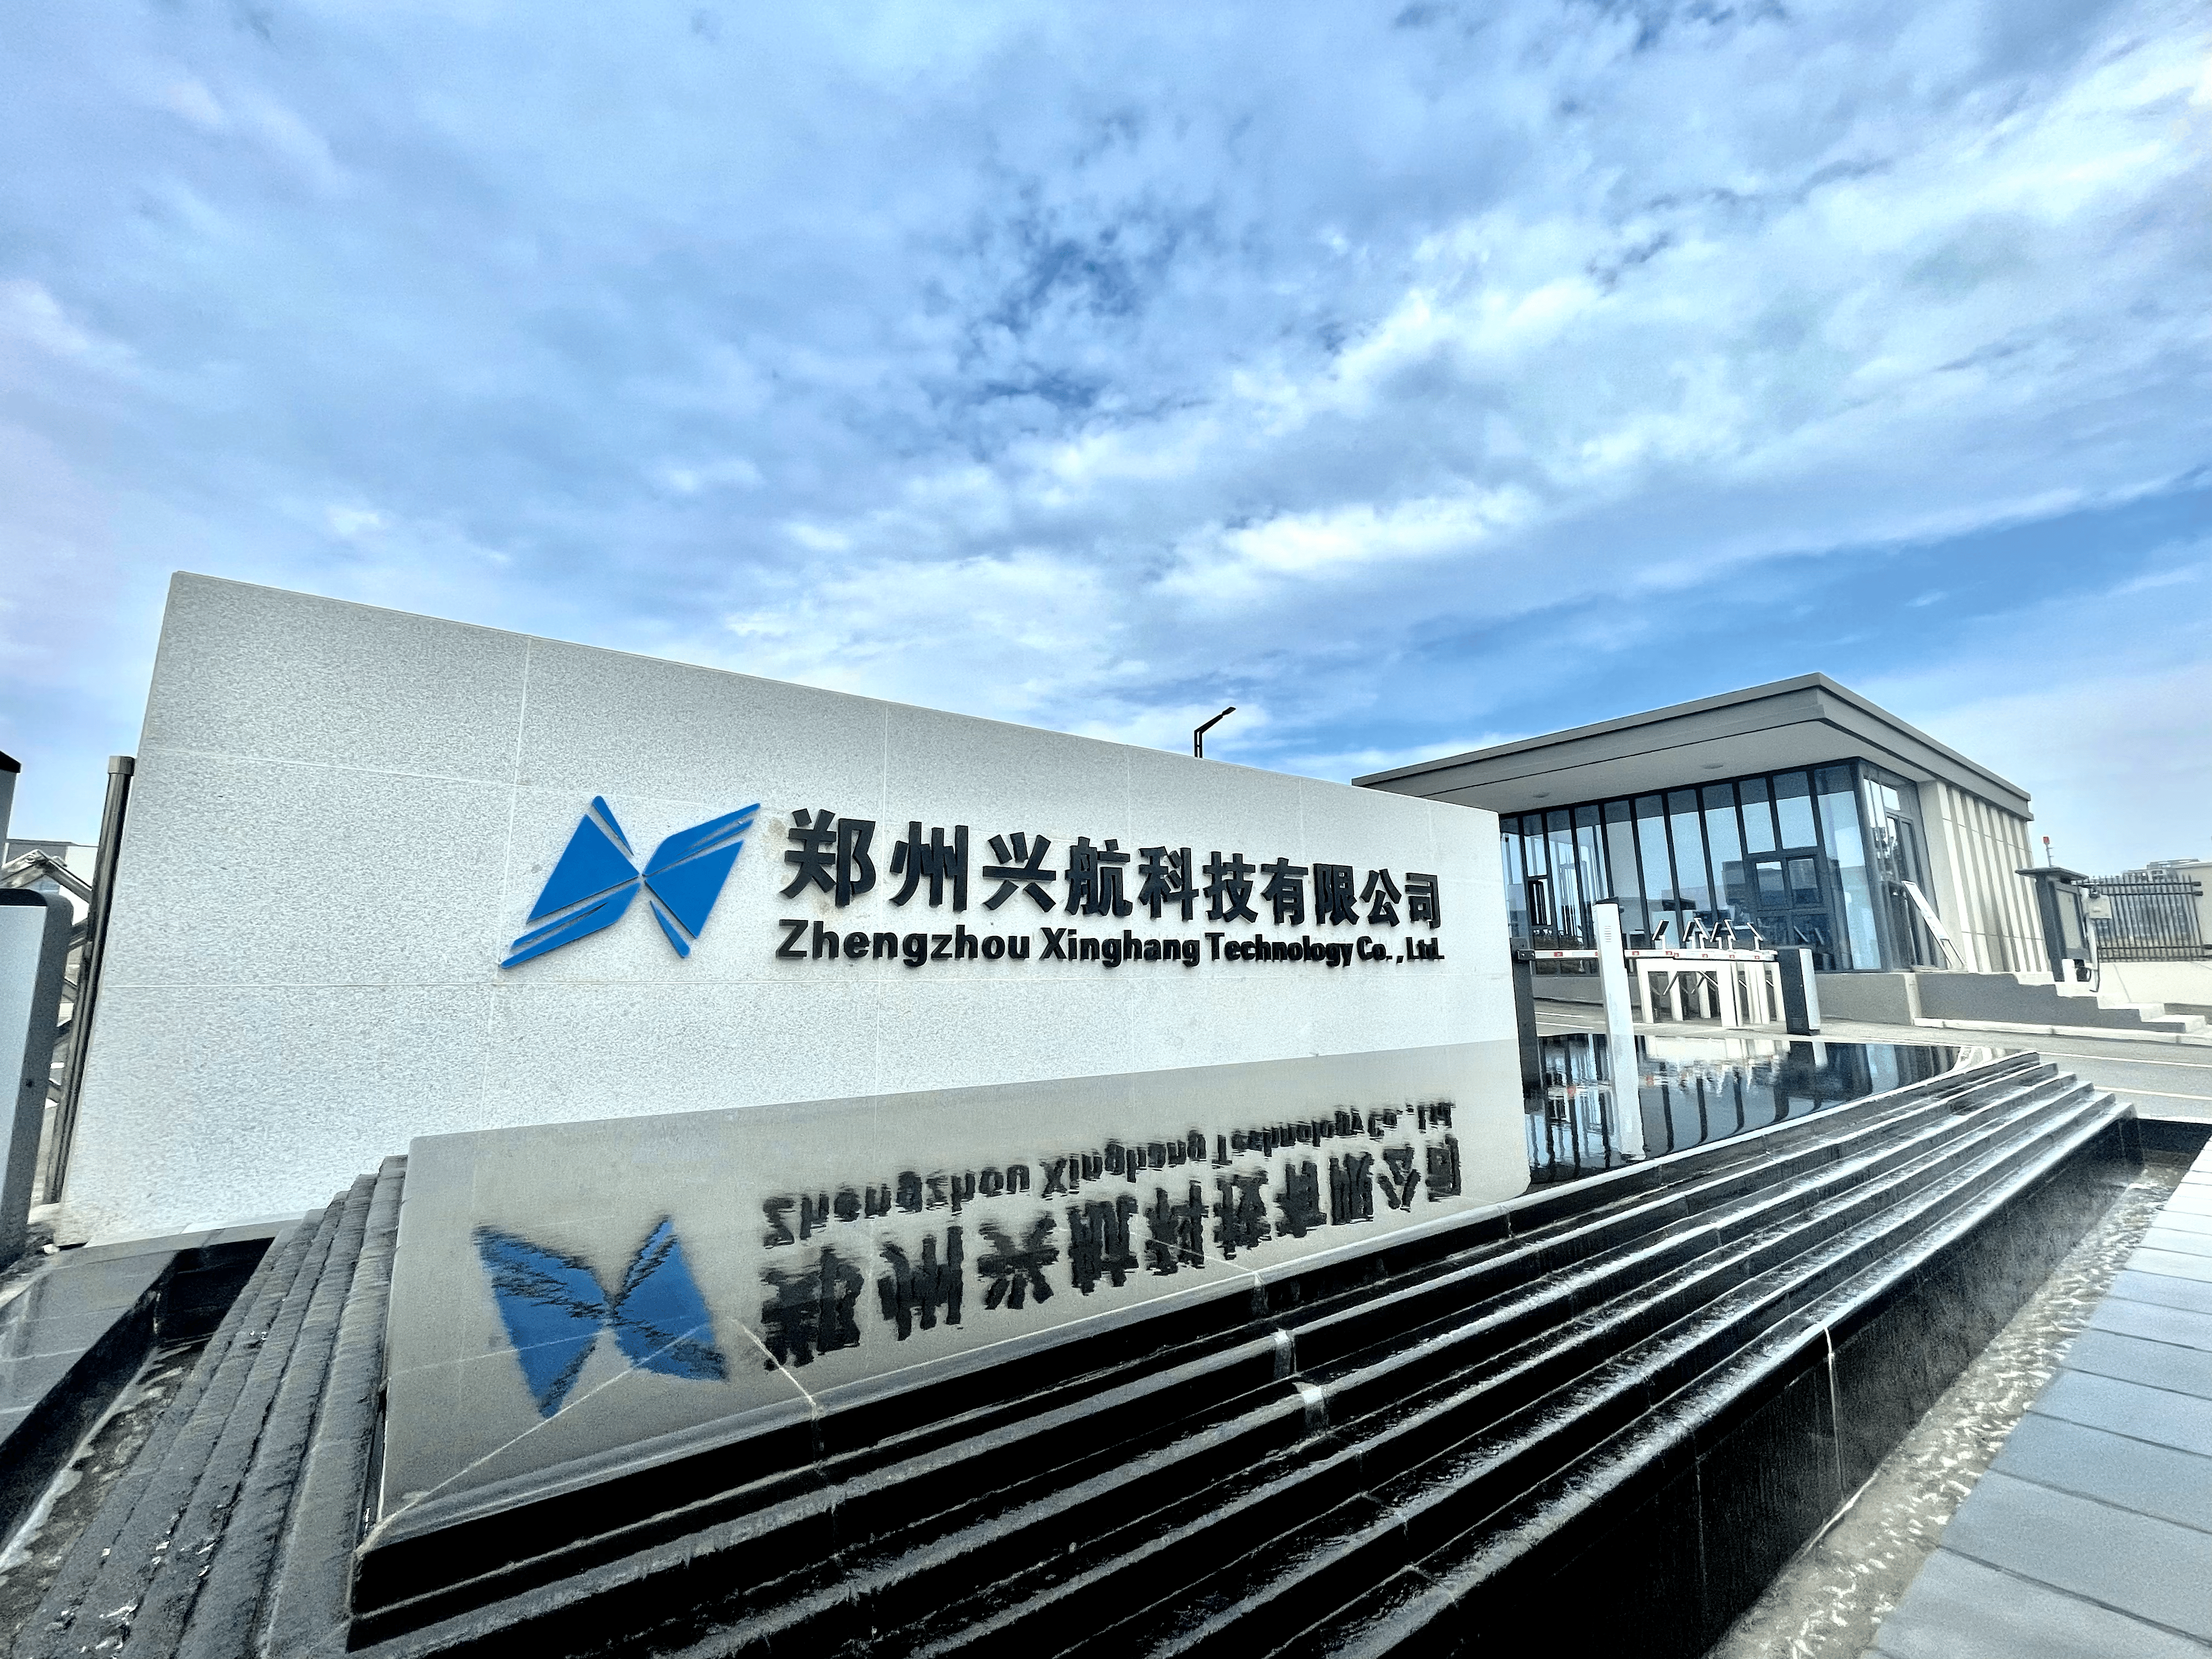 2022年11月17日,河南航空港投资集团有限公司与西安微电子技术研究所